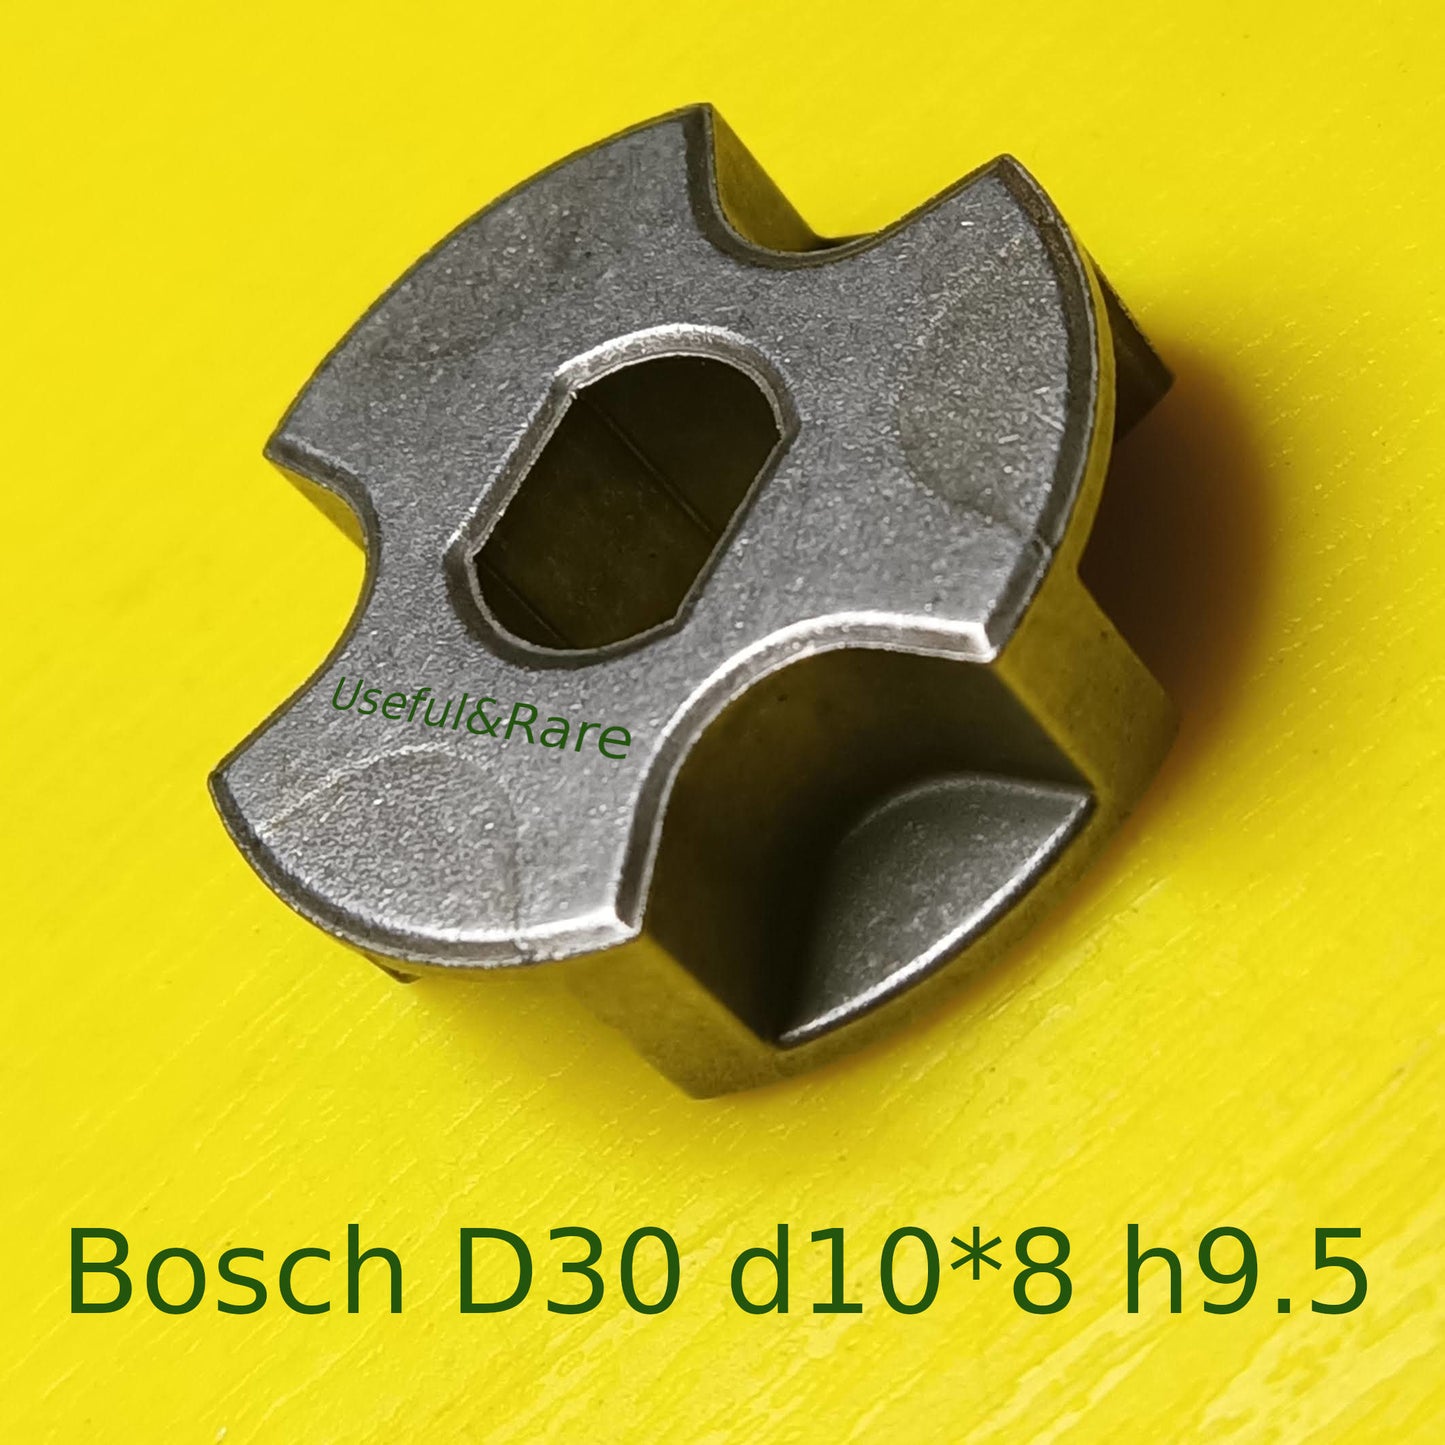 Bosch D30 d10*8 h9.5